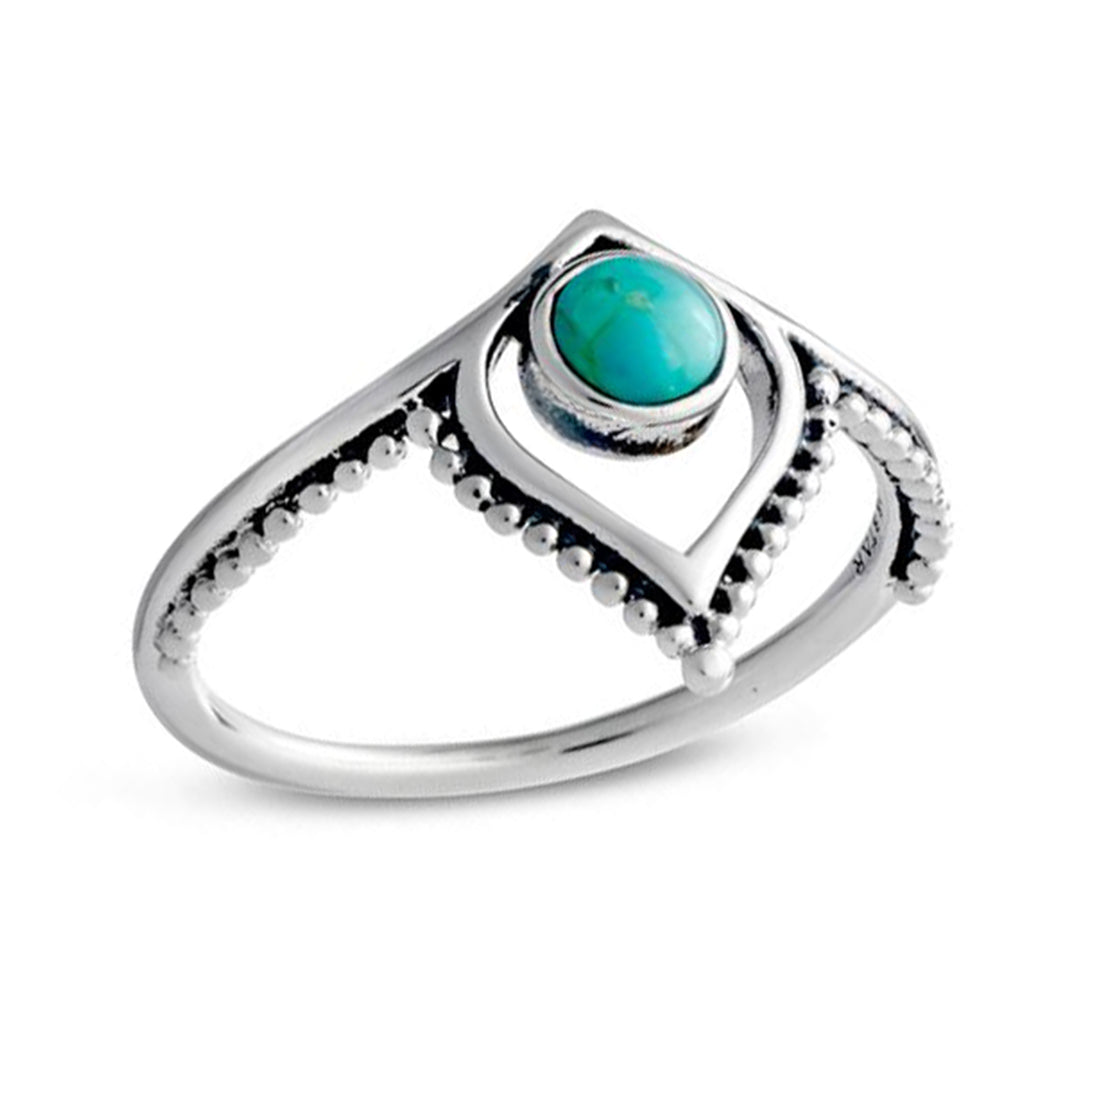 Tanta Turquoise Ring